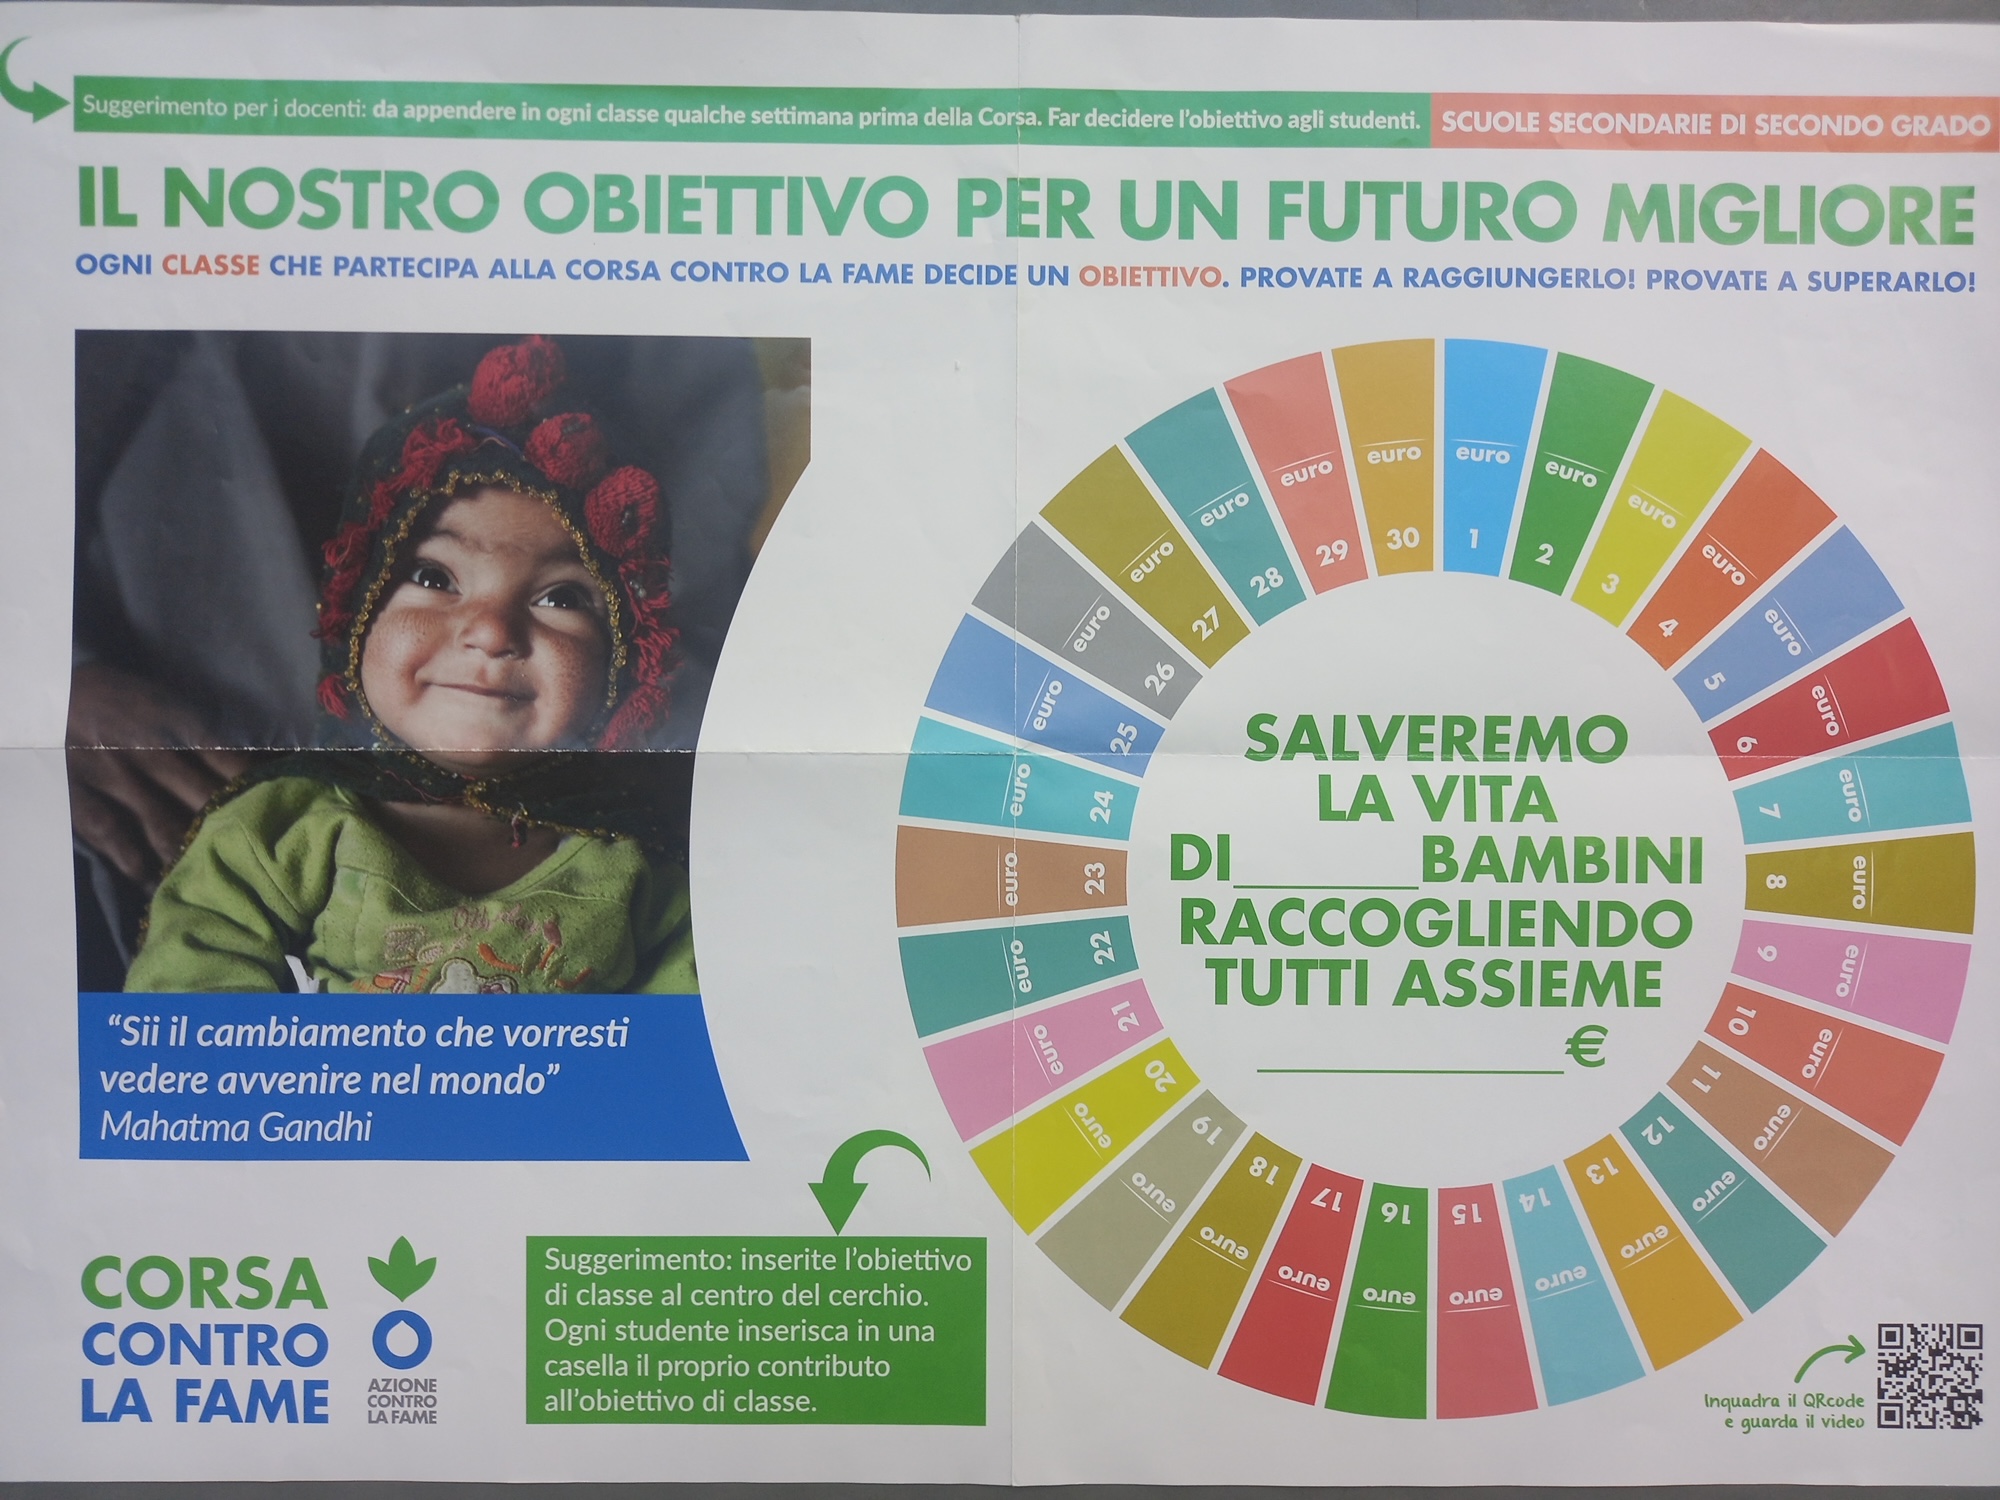 Sport e solidarietà: il Liceo “Piero della Francesca” partecipa alla “corsa contro la fame”